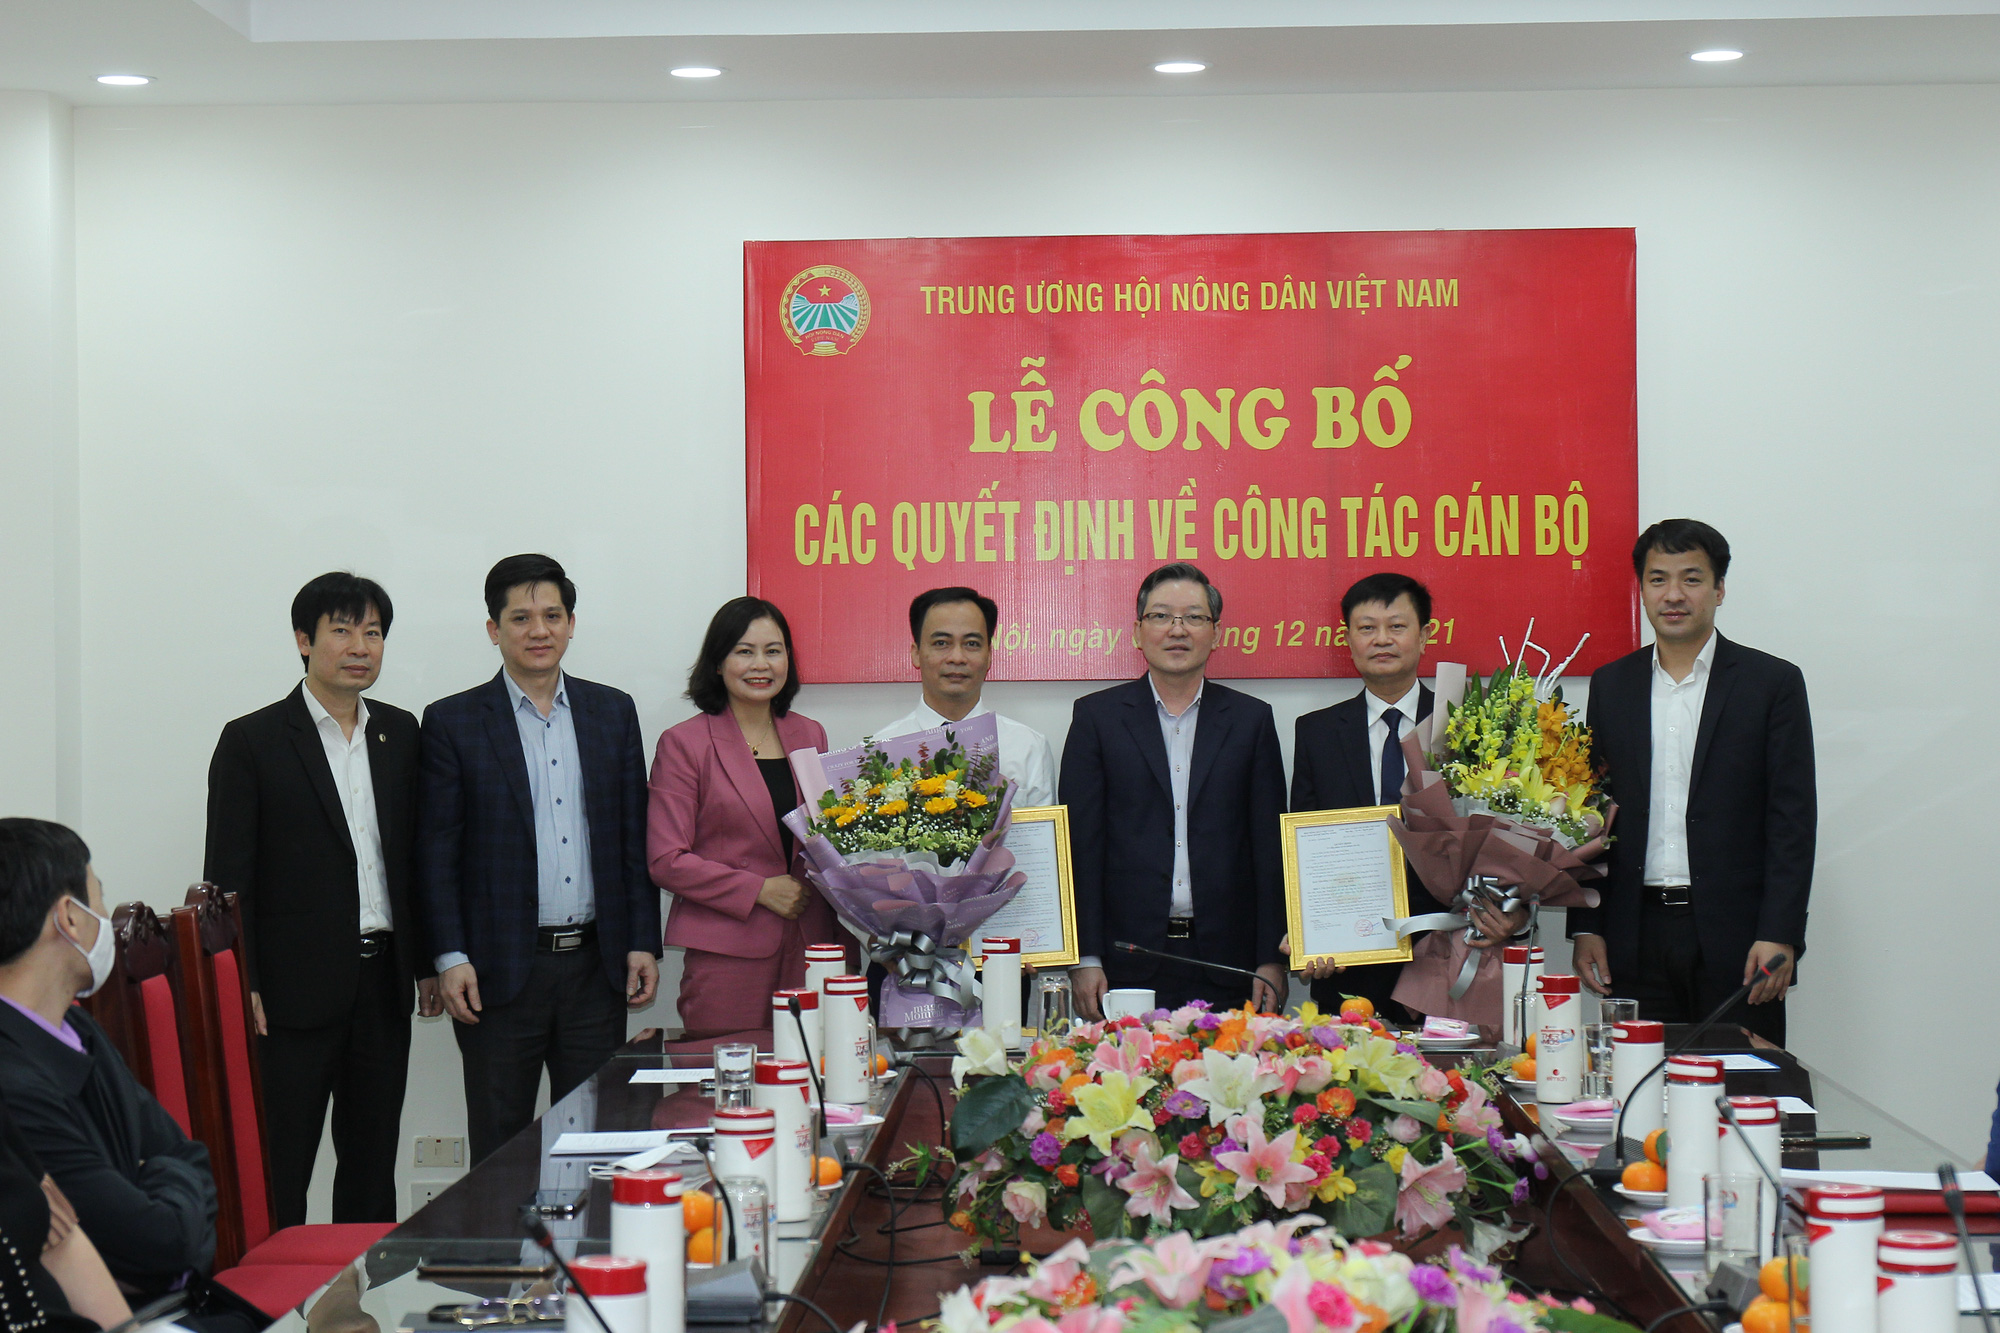 Tiếp nhận và bổ nhiệm ông Nguyễn Hồng Hải làm Thư ký Chủ tịch BCH T.Ư Hội Nông dân Việt Nam - Ảnh 3.